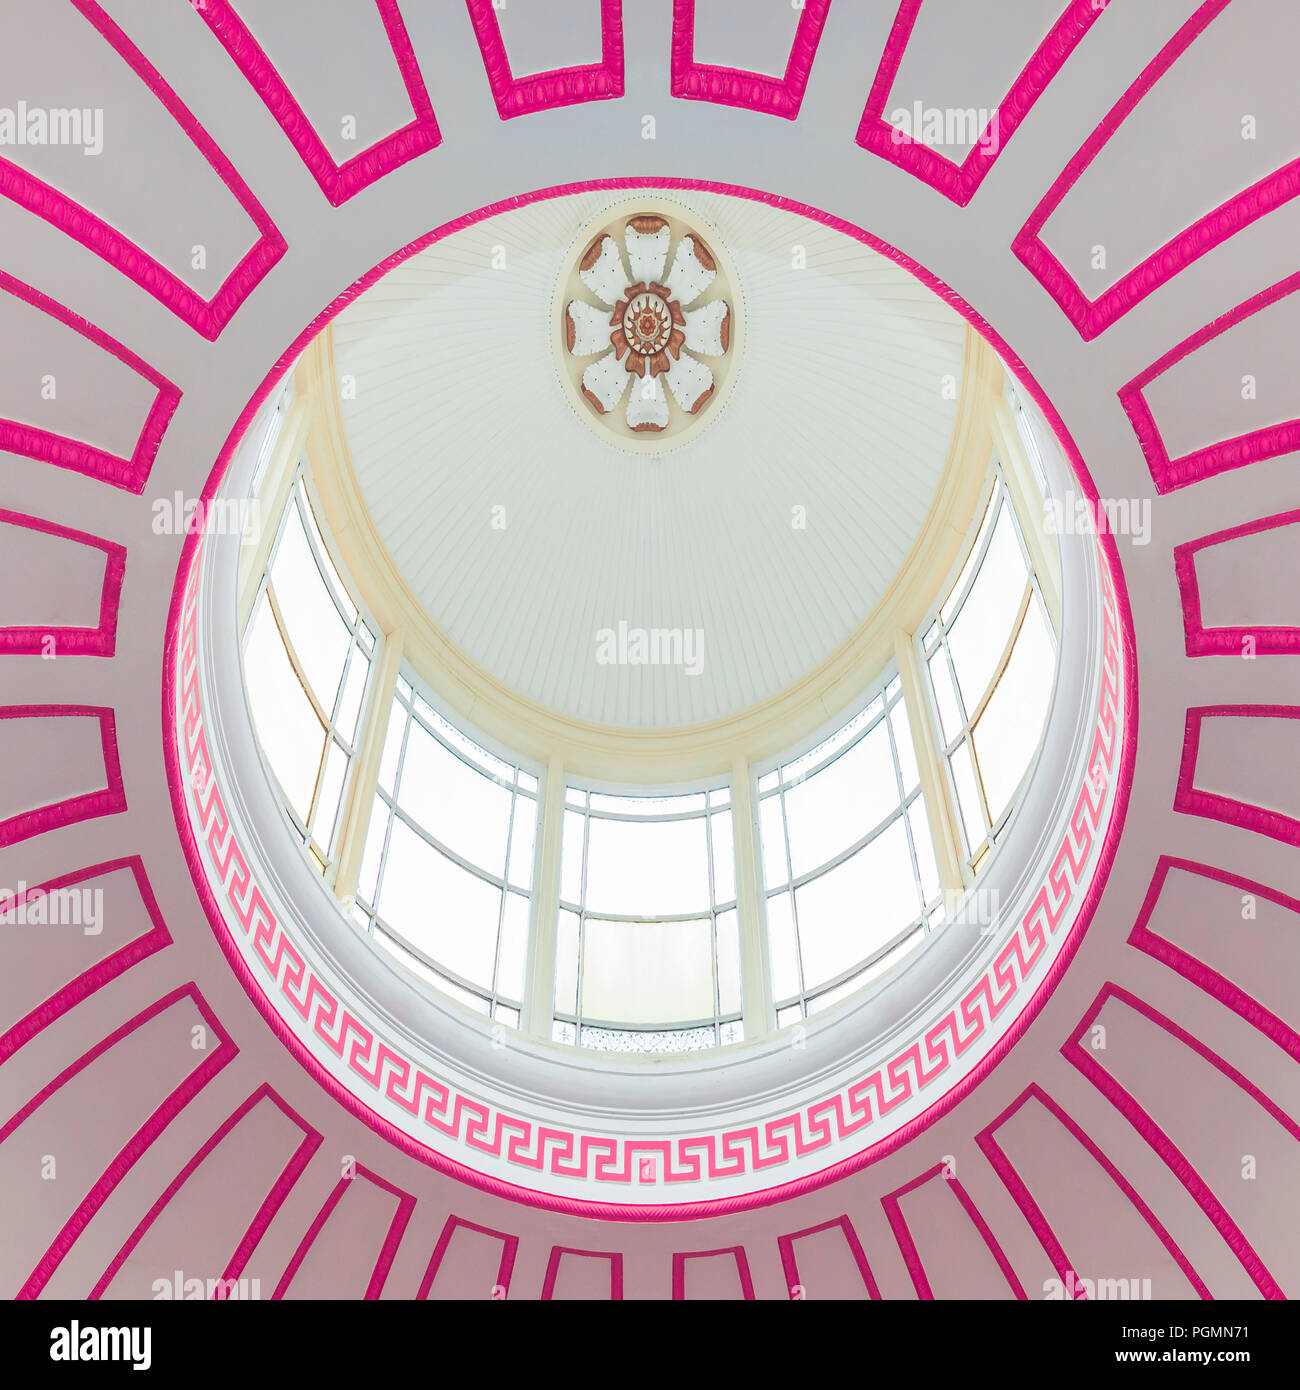 Ornate pink atrium skylight. Stock Photo